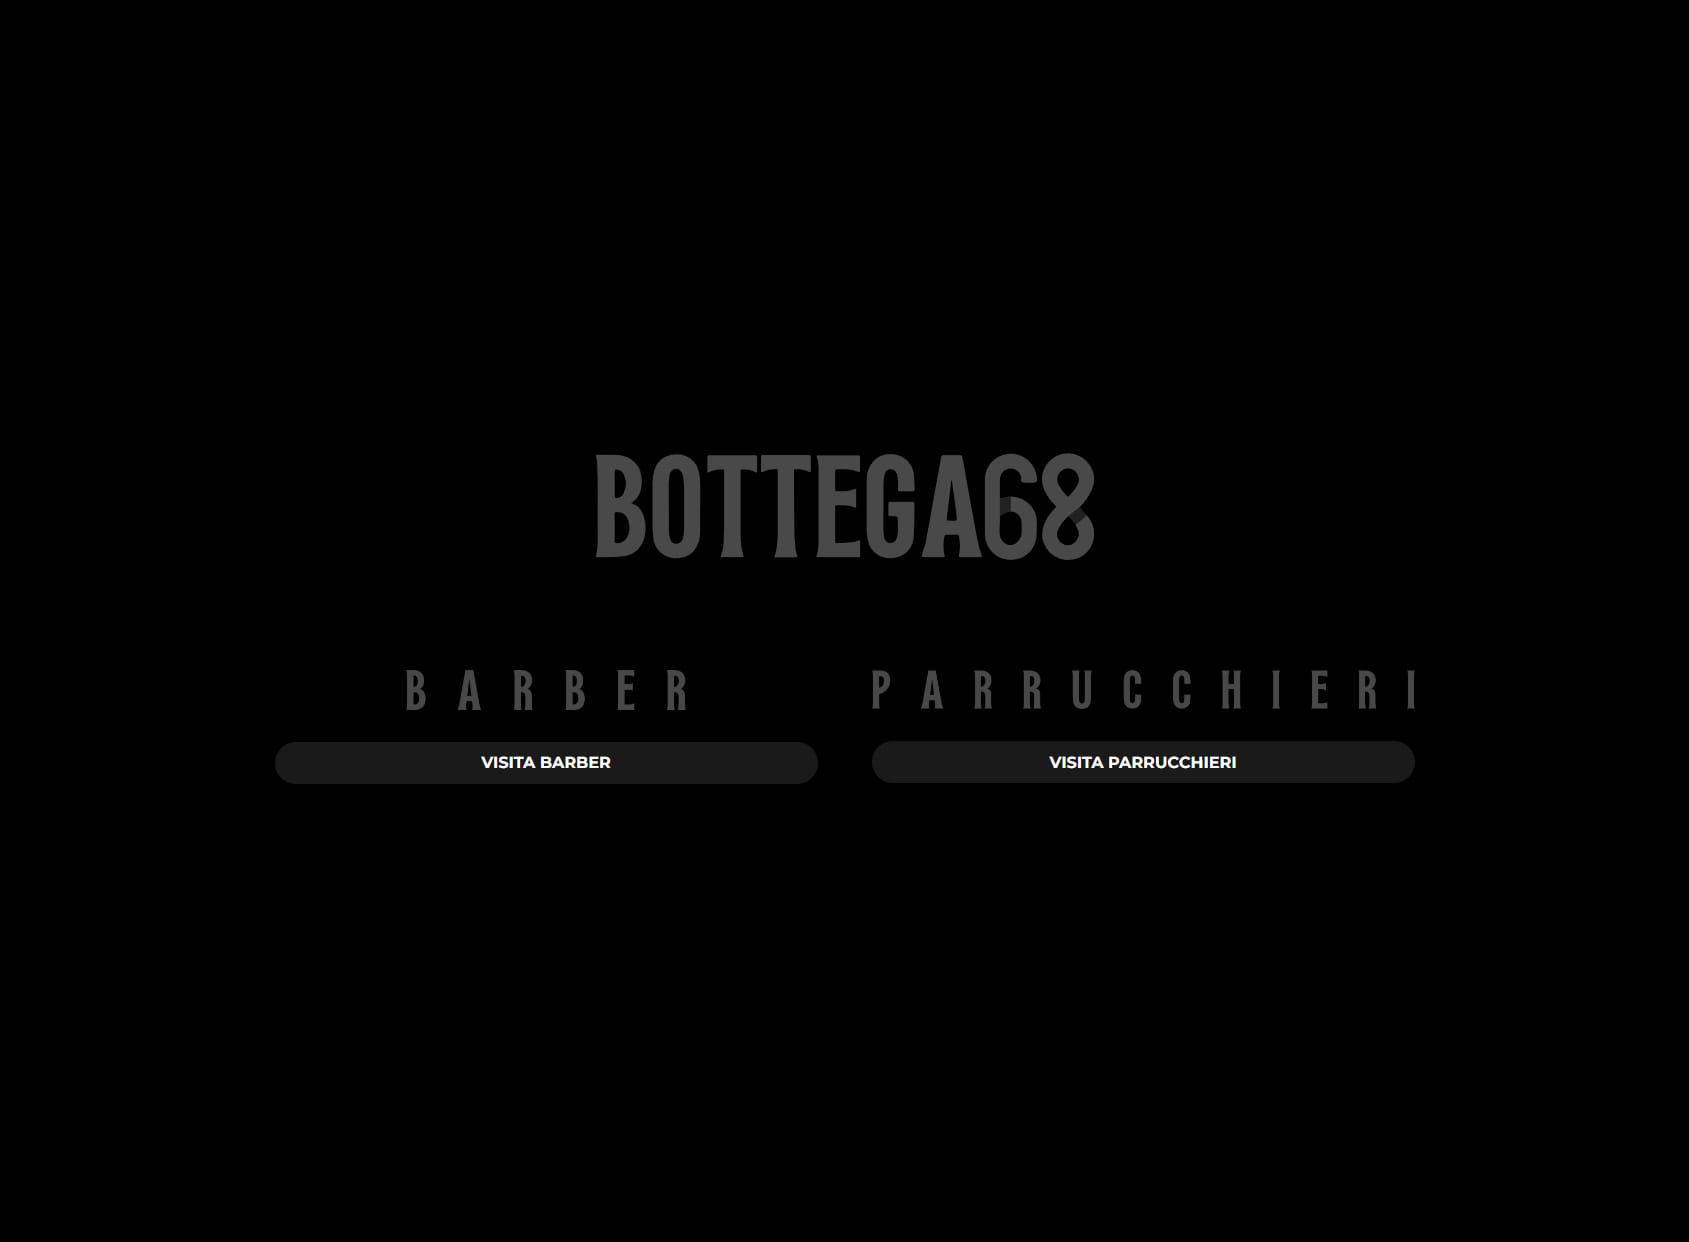 Barber Shop - Bottega68